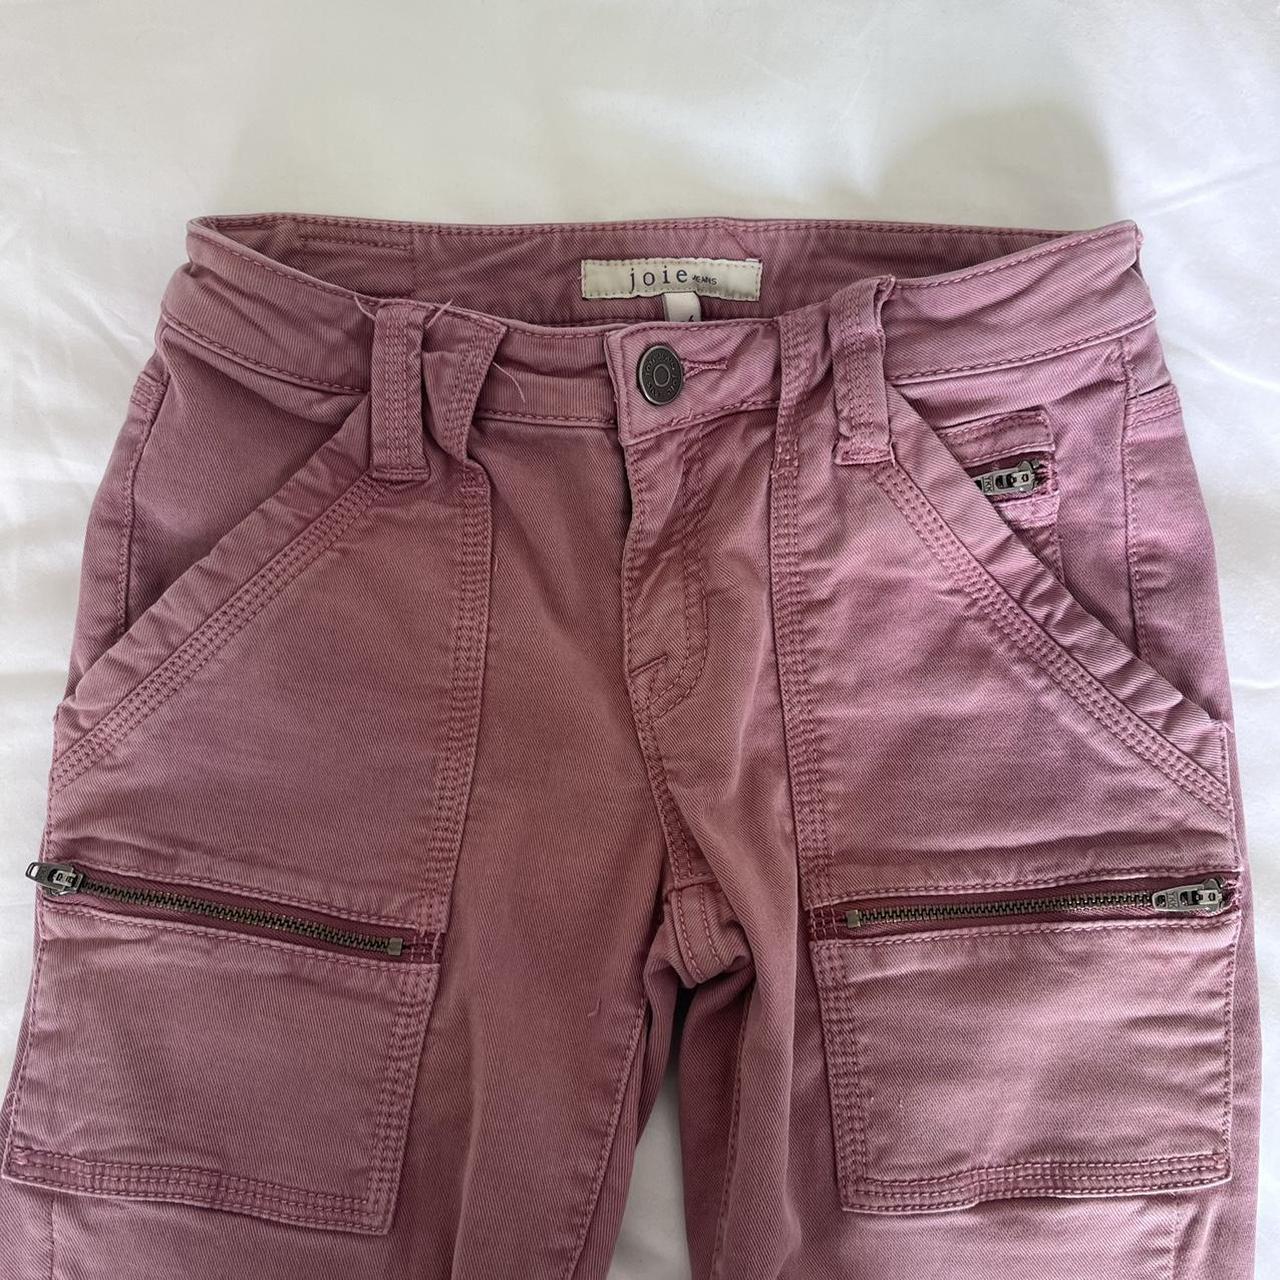 Joie Women's Pink Trousers